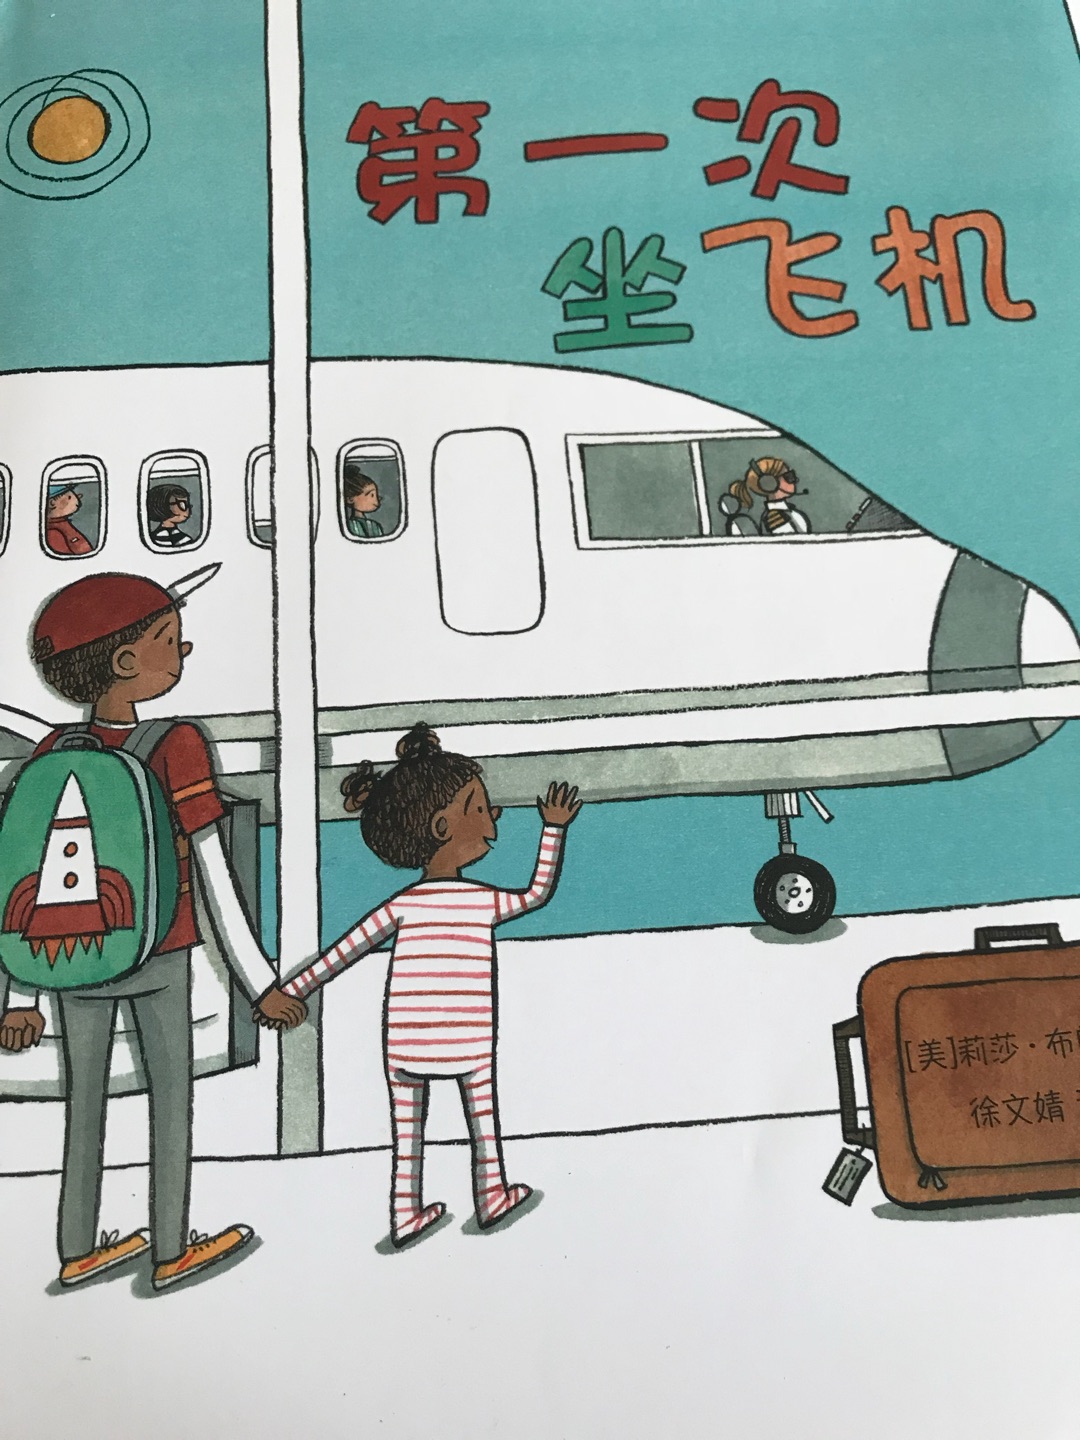 马上带孩子去旅游，提前预览下坐飞机的流程和一些注意事项。